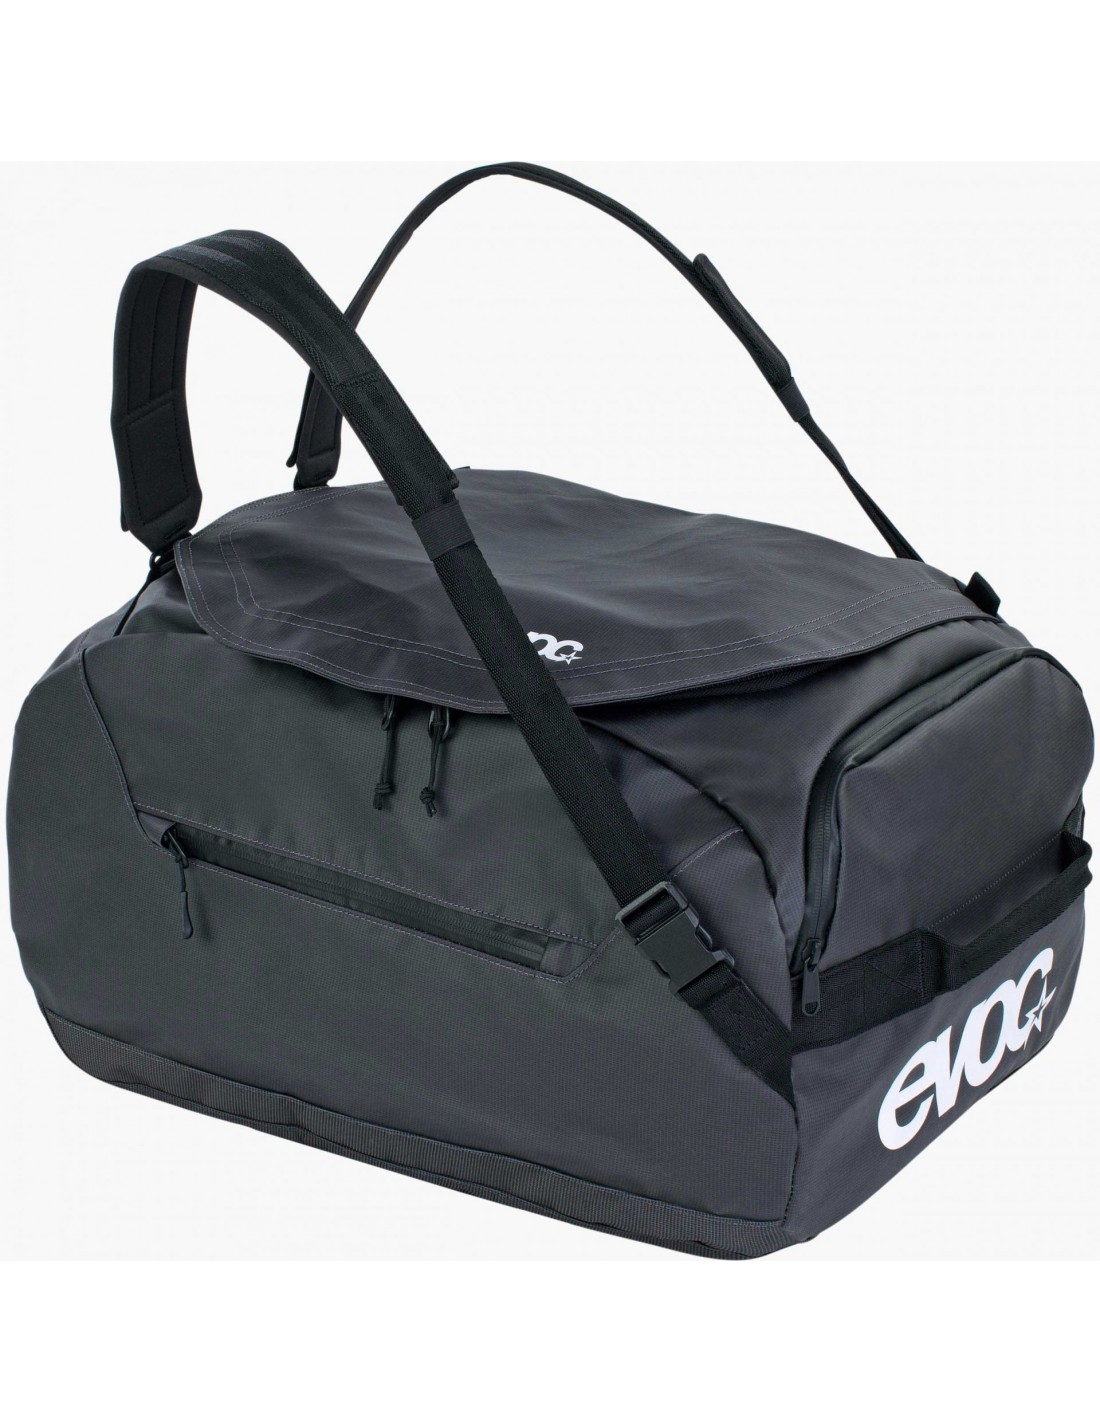 Evoc Duffle Bag 40, carbon grey-black von Evoc